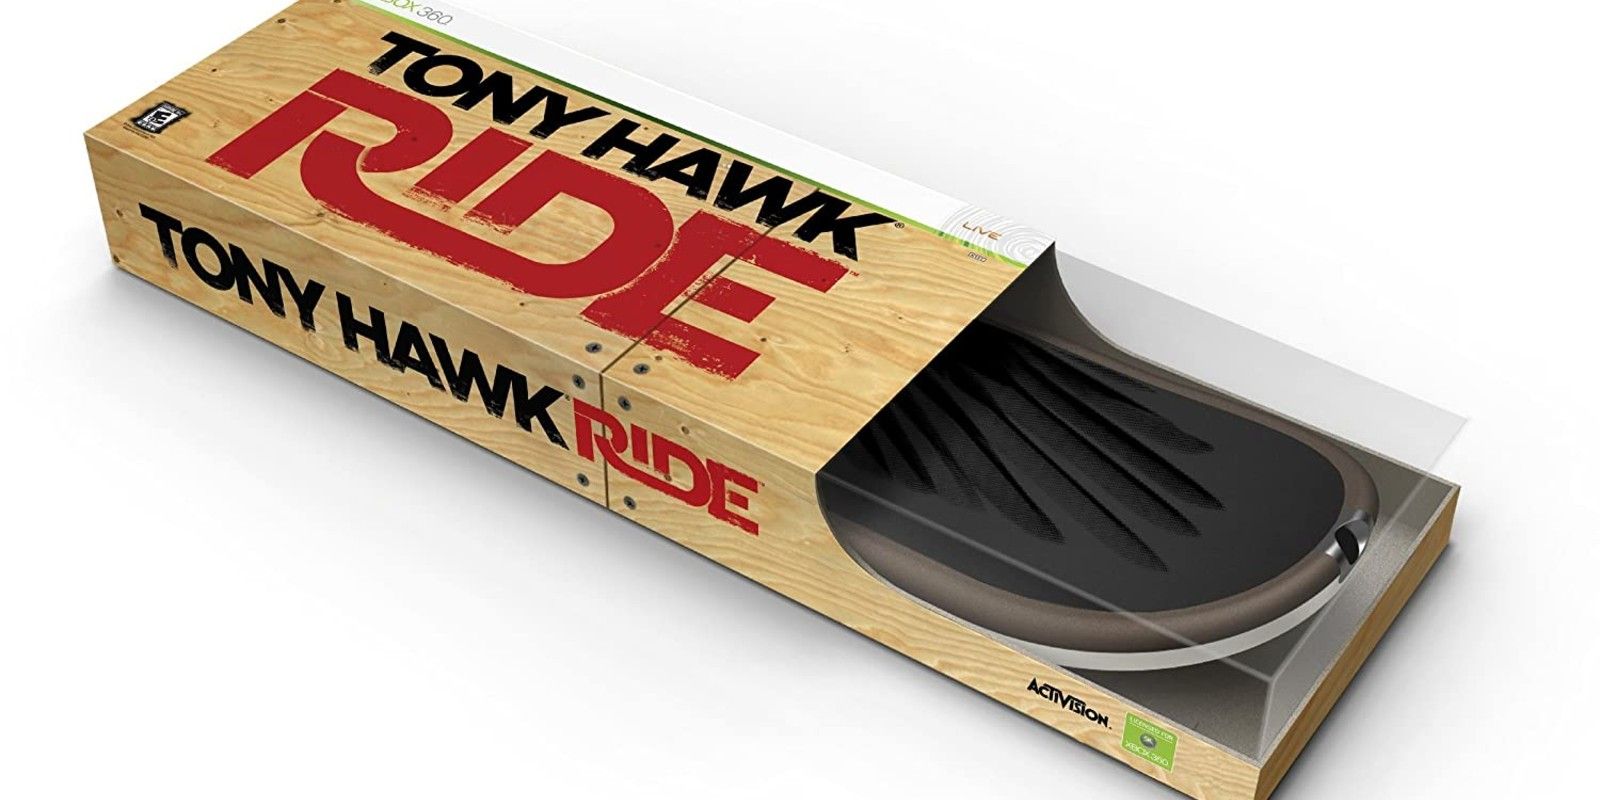 Tony Hawk: Ride packaging